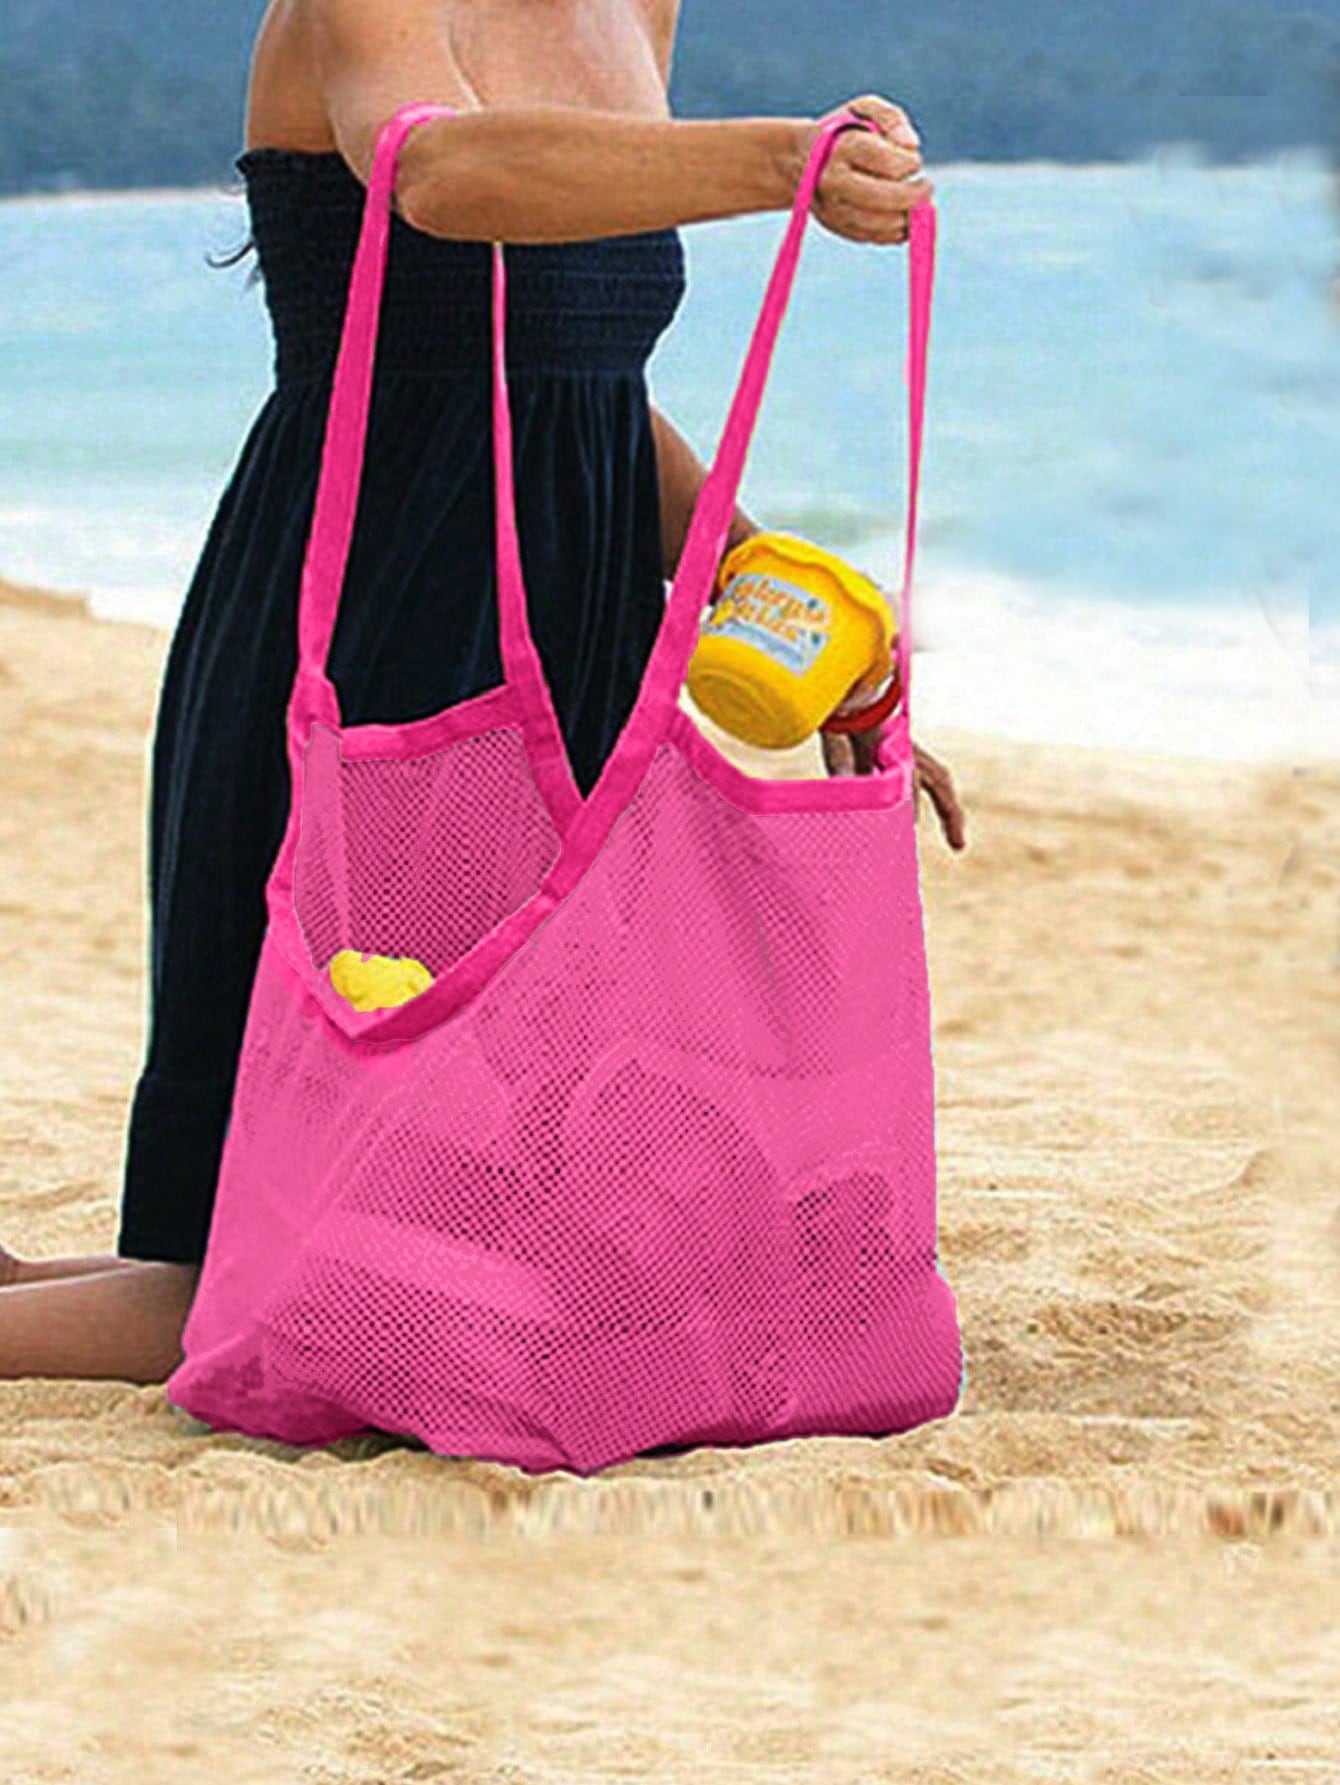 треугольная перевернутая подвесная сливная сетчатая сумка с кронштейном для кухонной раковины зеркальная сумка для мытья овощей Большая пляжная сумка с контрастной переплетной сеткой для отдыха, ярко-розовый